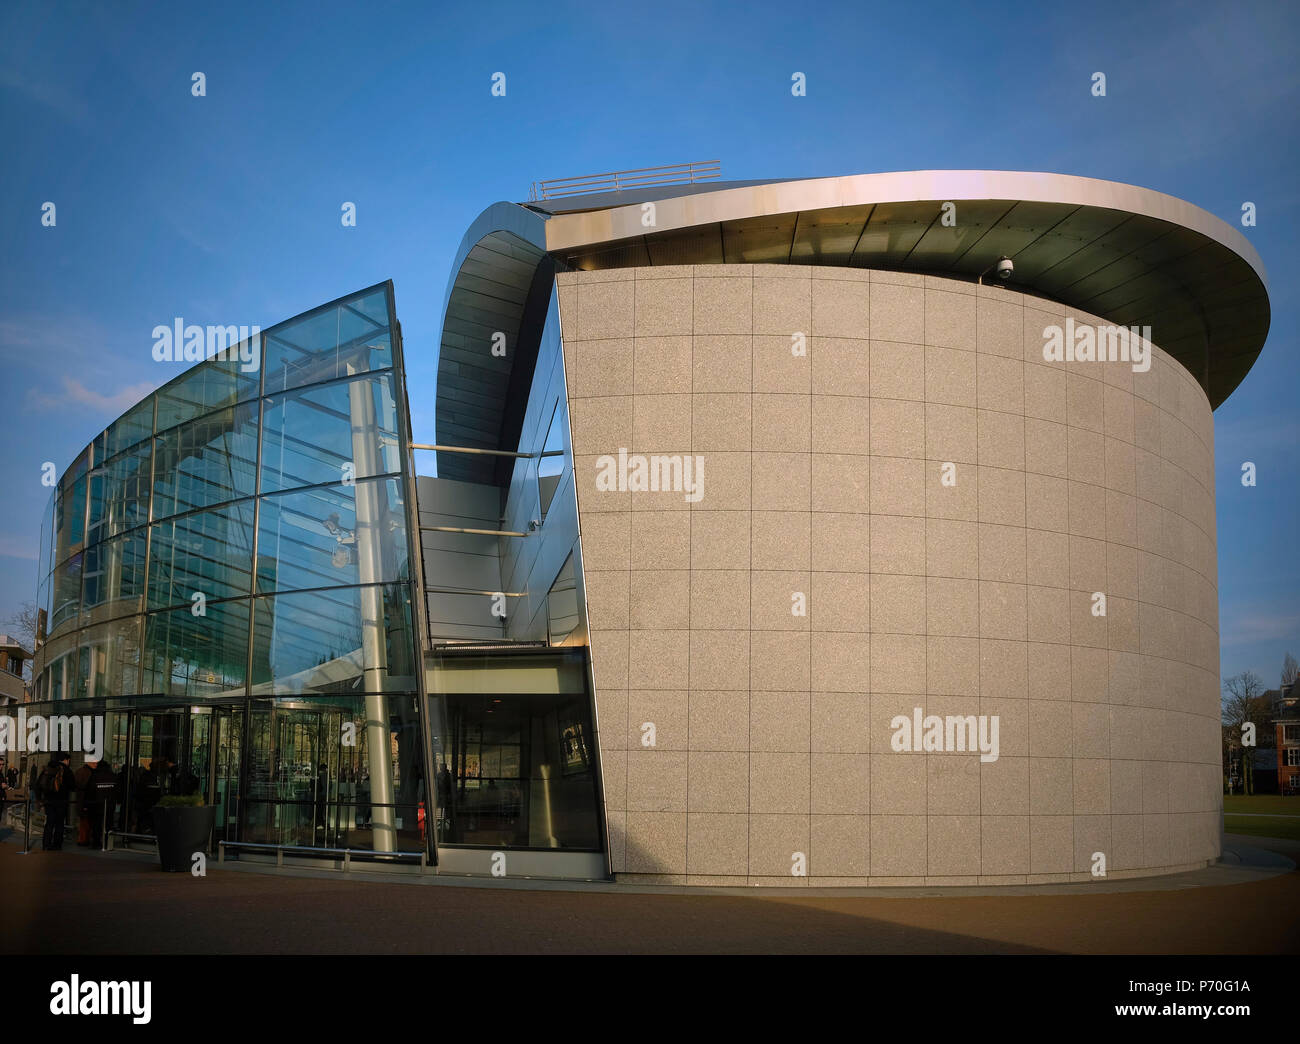 Das Van Gogh Museum, Amsterdam. Neue ntrance Eröffnet 2015. Von den niederländischen Architekten Hans van Heeswijk Architecten nach Entwürfen von Kisho Kurokawa basierend Stockfoto